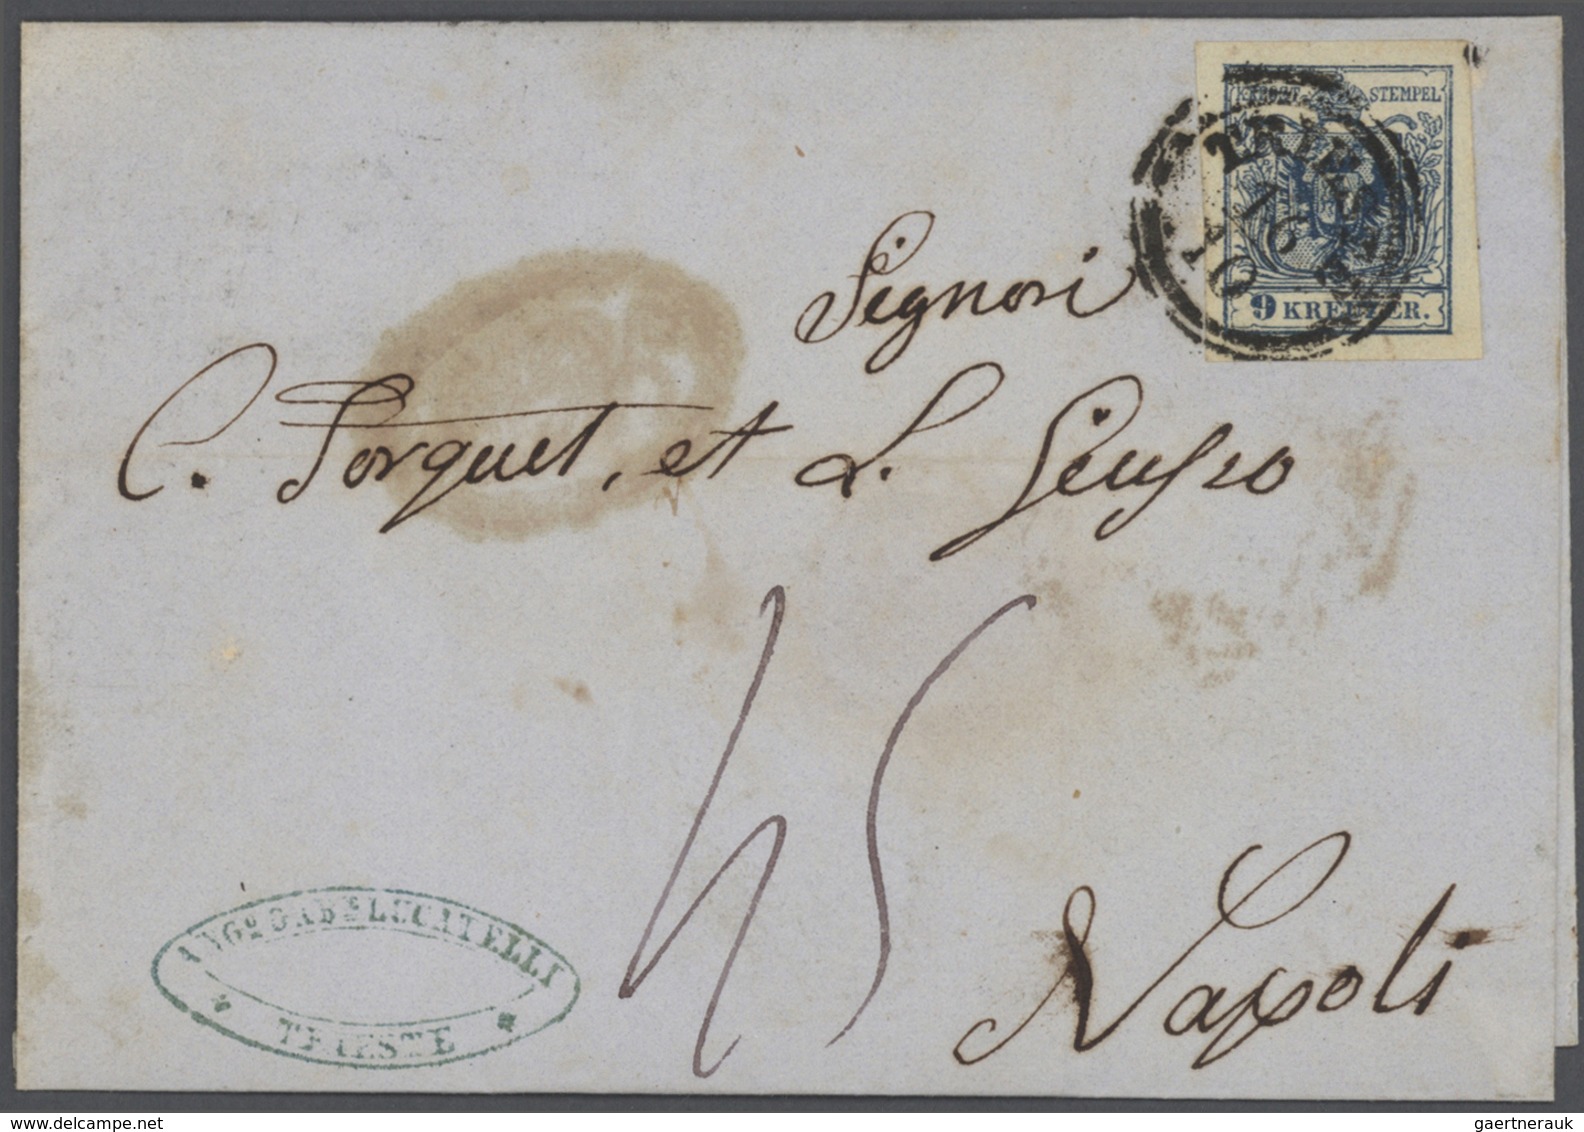 Br Österreich: 1850-56, Sammlung von 22 Briefen von TRIEST oder WIEN frankiert mit tadelloses 9 Kr. Mar